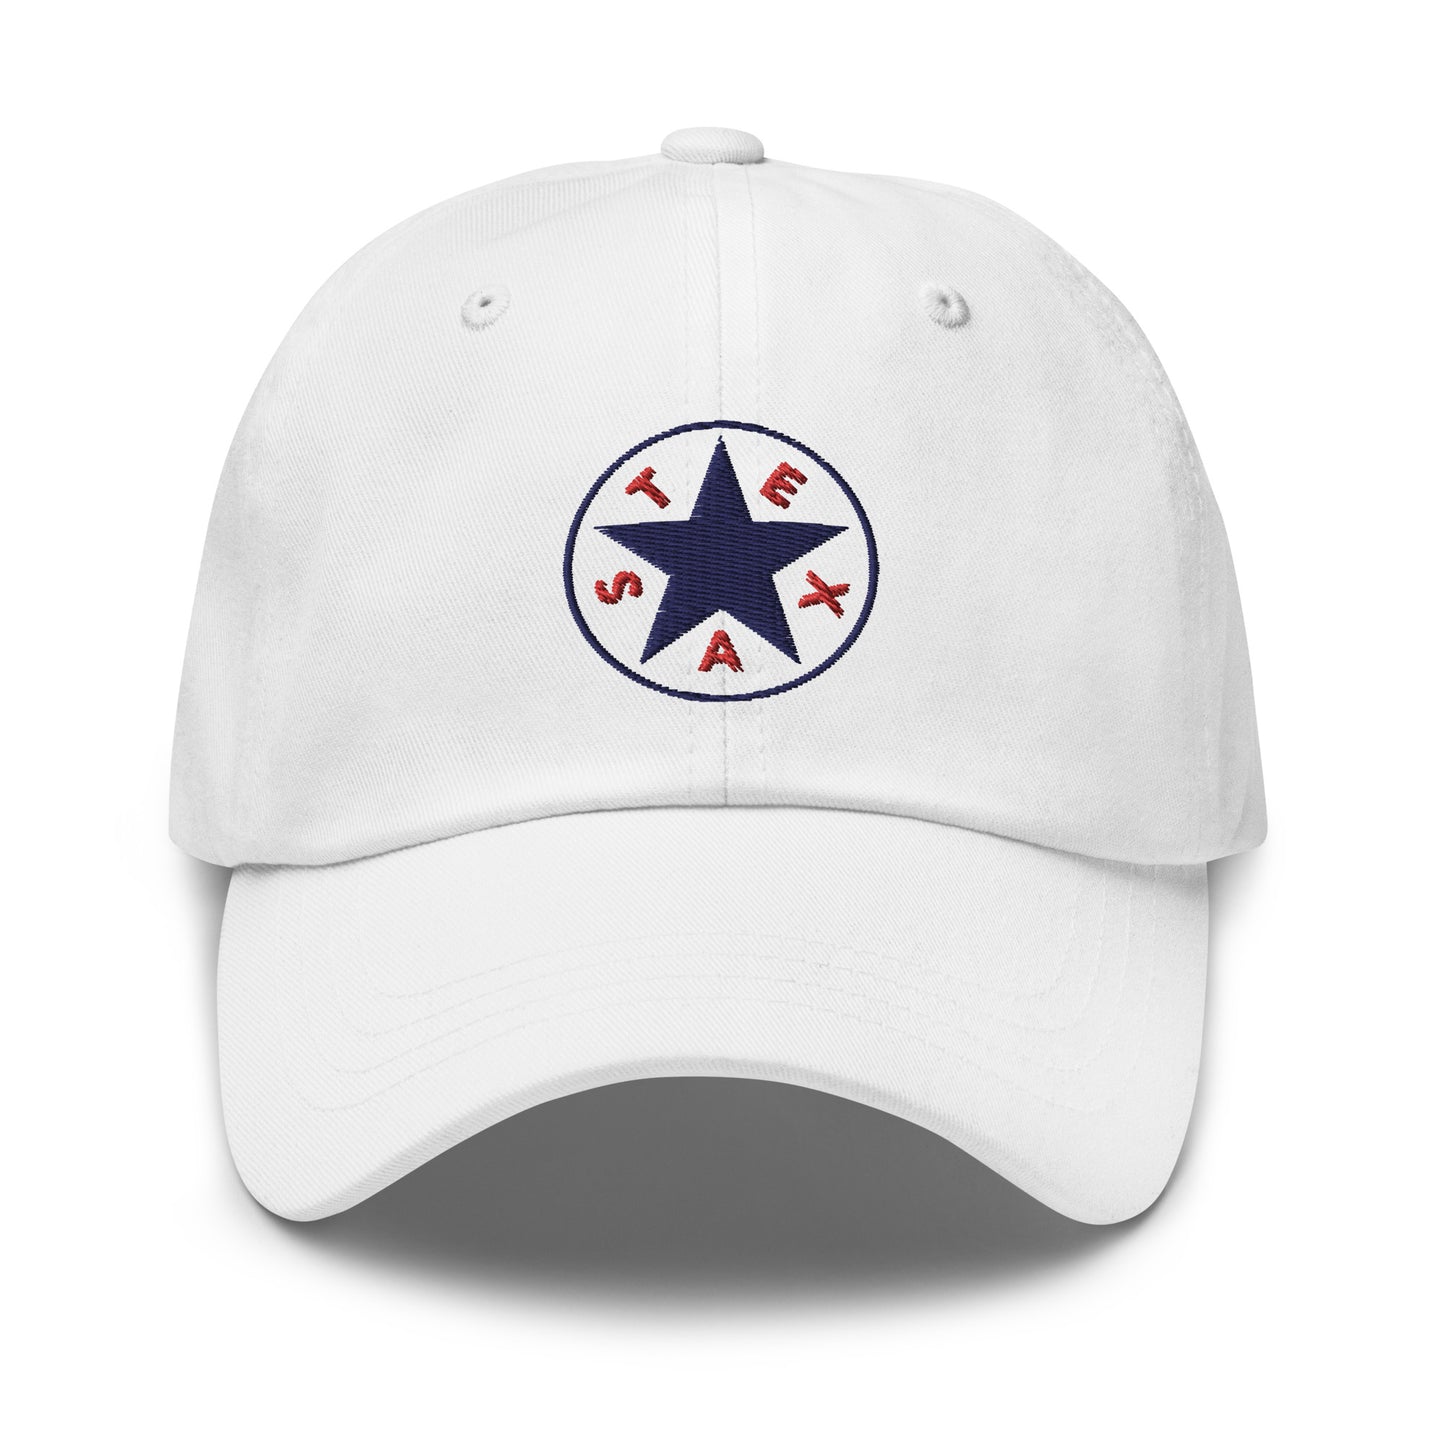 The Texas Star Cap